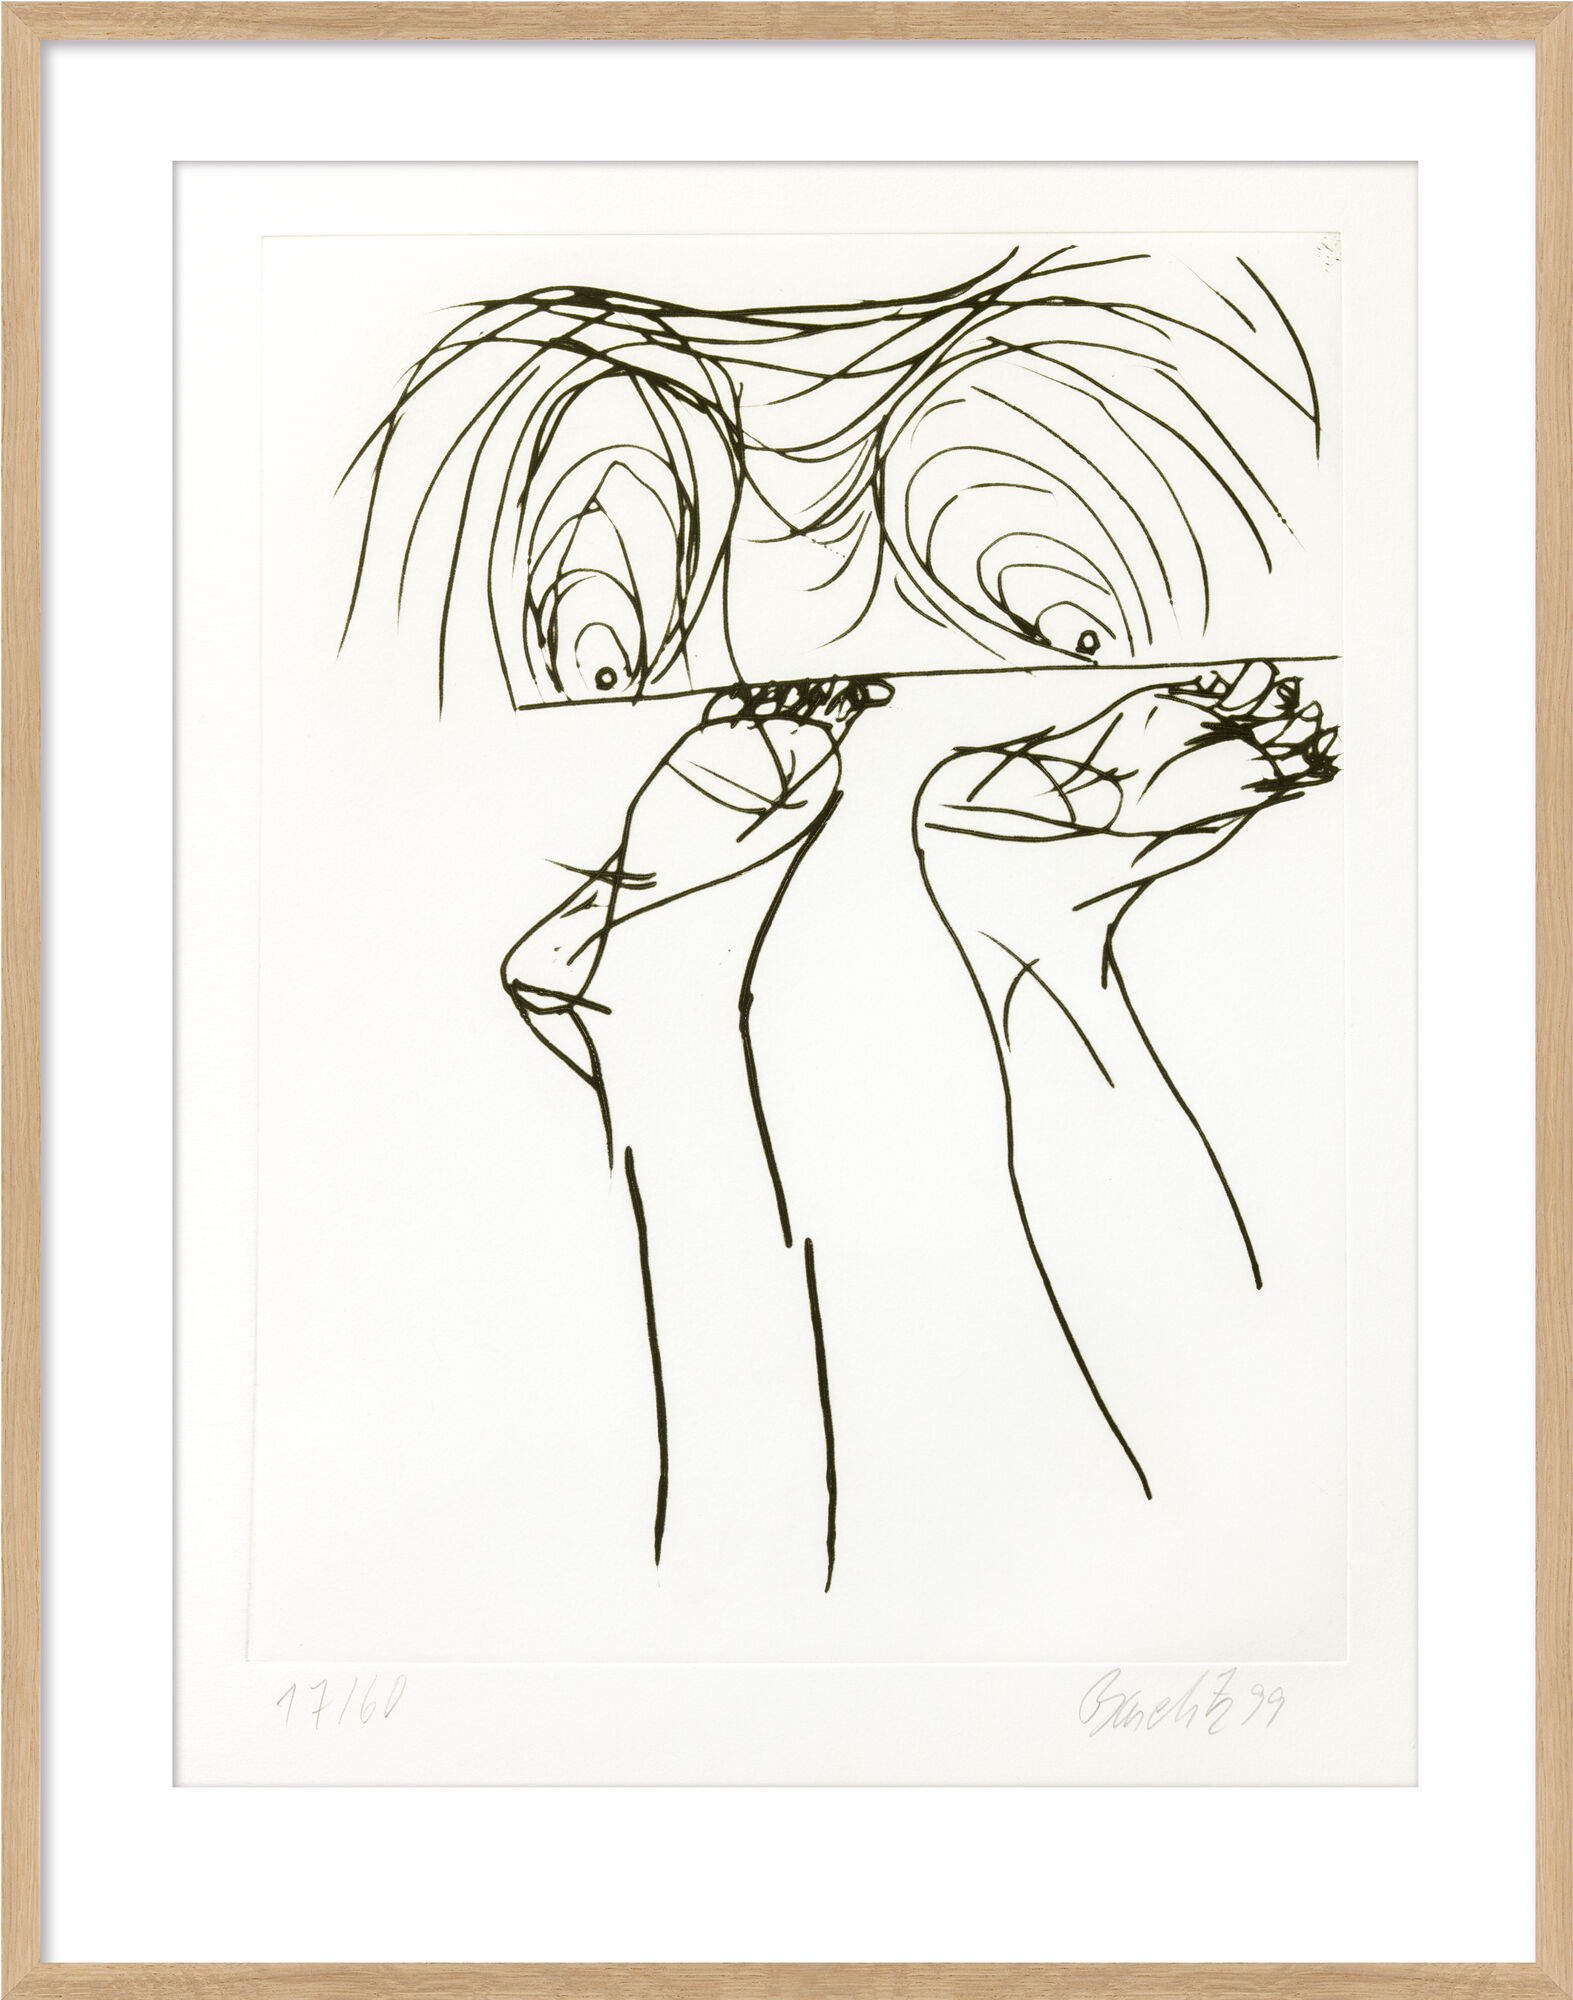 Tableau "Untitled VI." du portfolio "Signs" (1999/2000) von Georg Baselitz